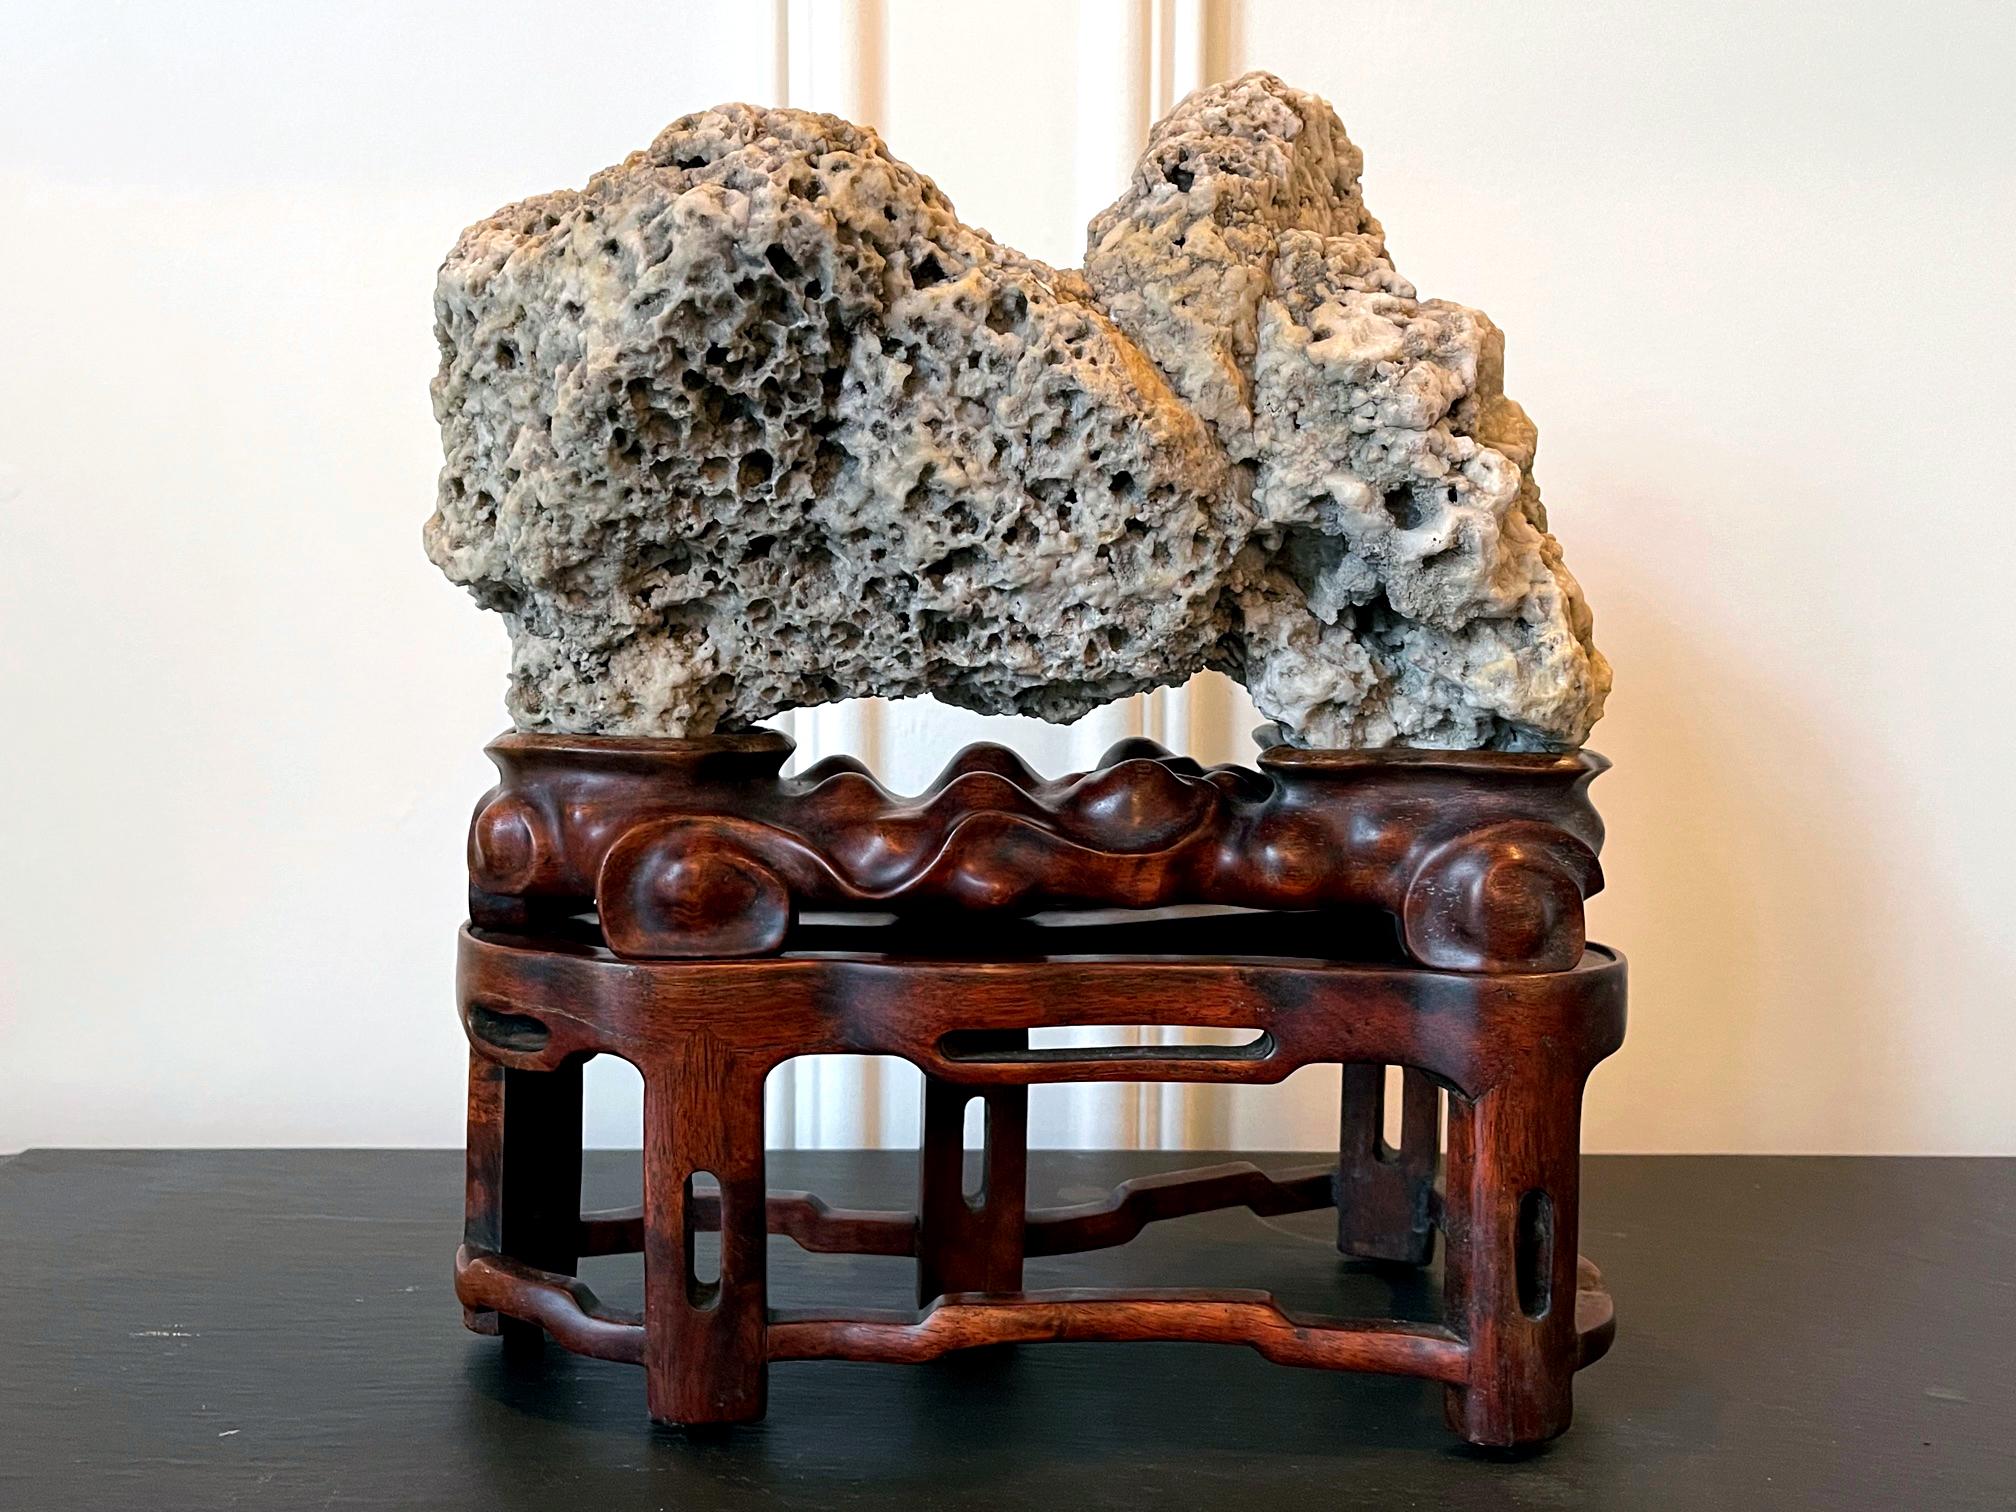 Dieser erhabene chinesische Gelehrtenstein wurde von den Jade-Gipfeln in den Kun-Bergen in der Provinz Jiangsu gesammelt. Aufgrund seiner einzigartigen Formation wird er in China manchmal auch als 